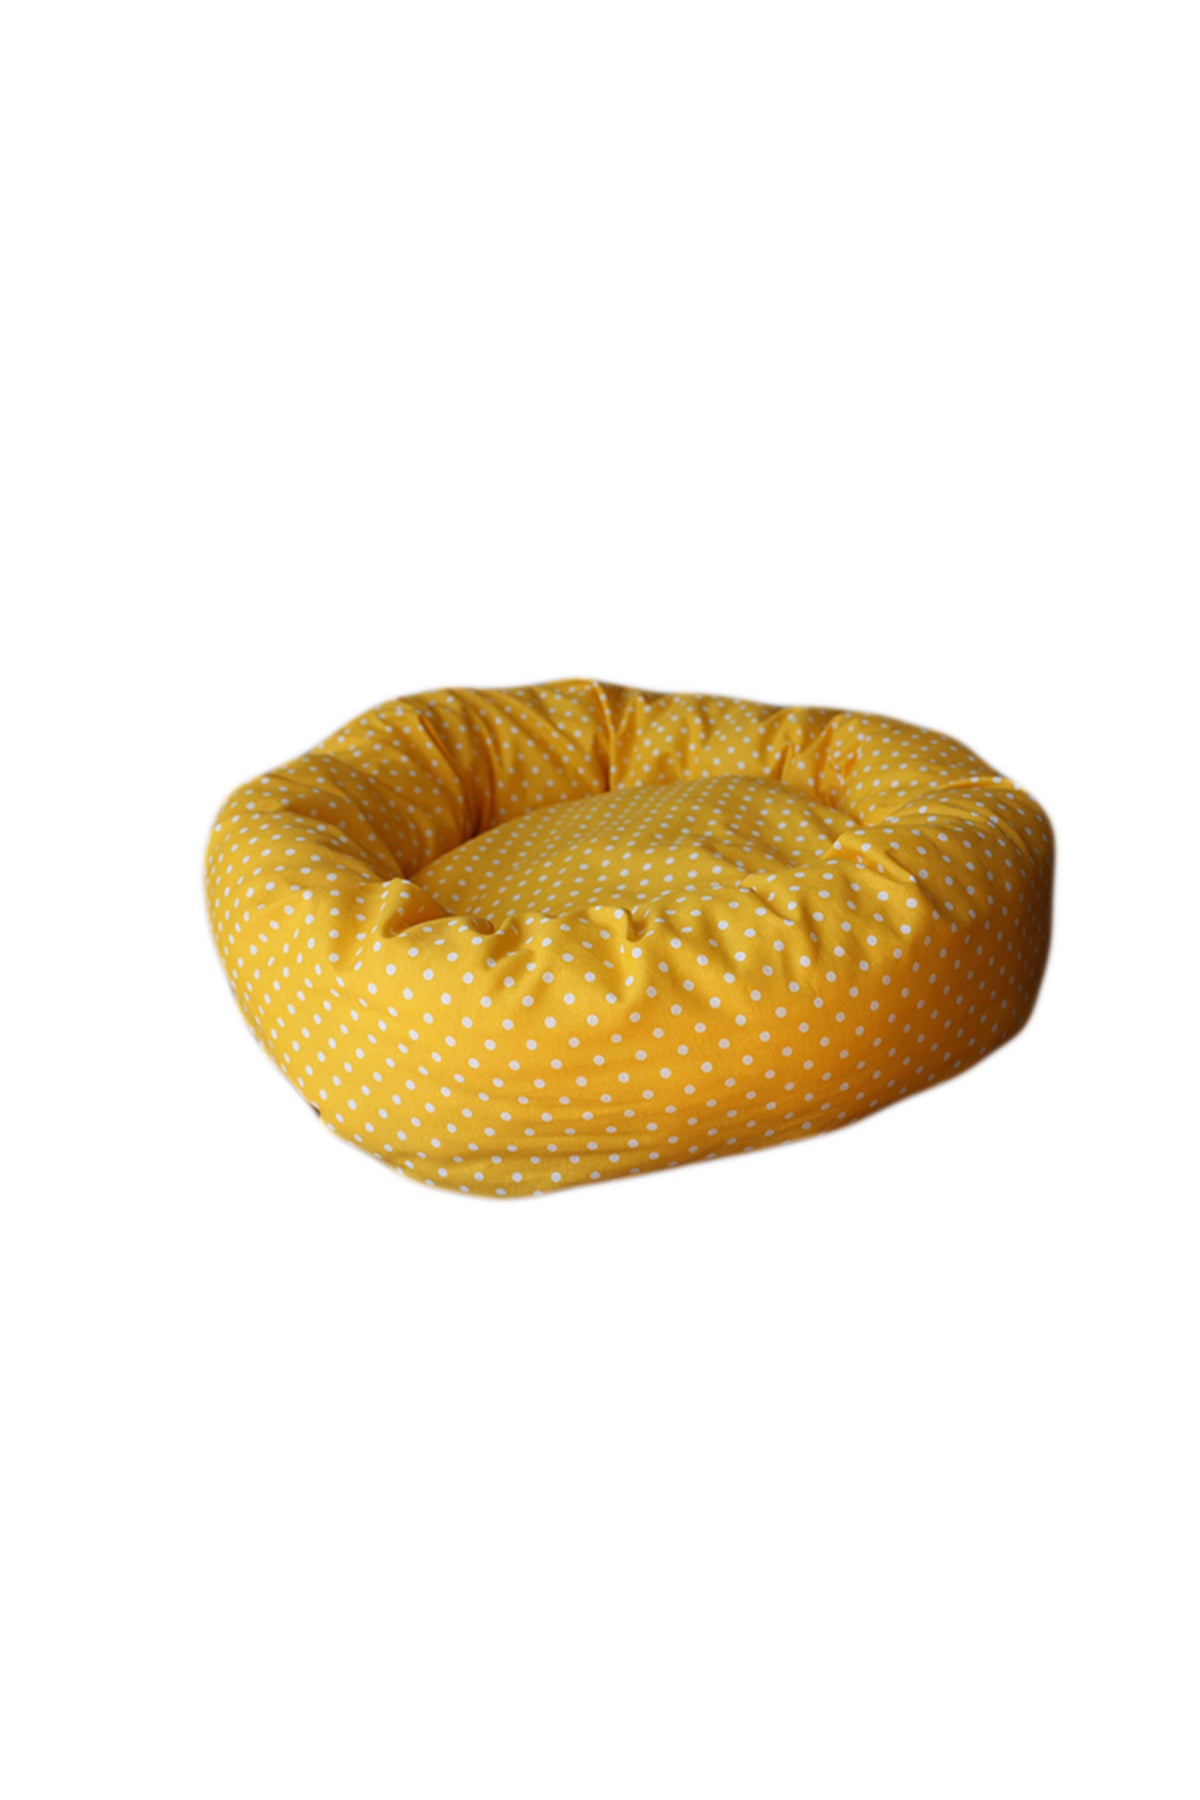 Flauschiges Gelbes Haustierbett (46x13x6 cm) für maximalen Komfort und Stil